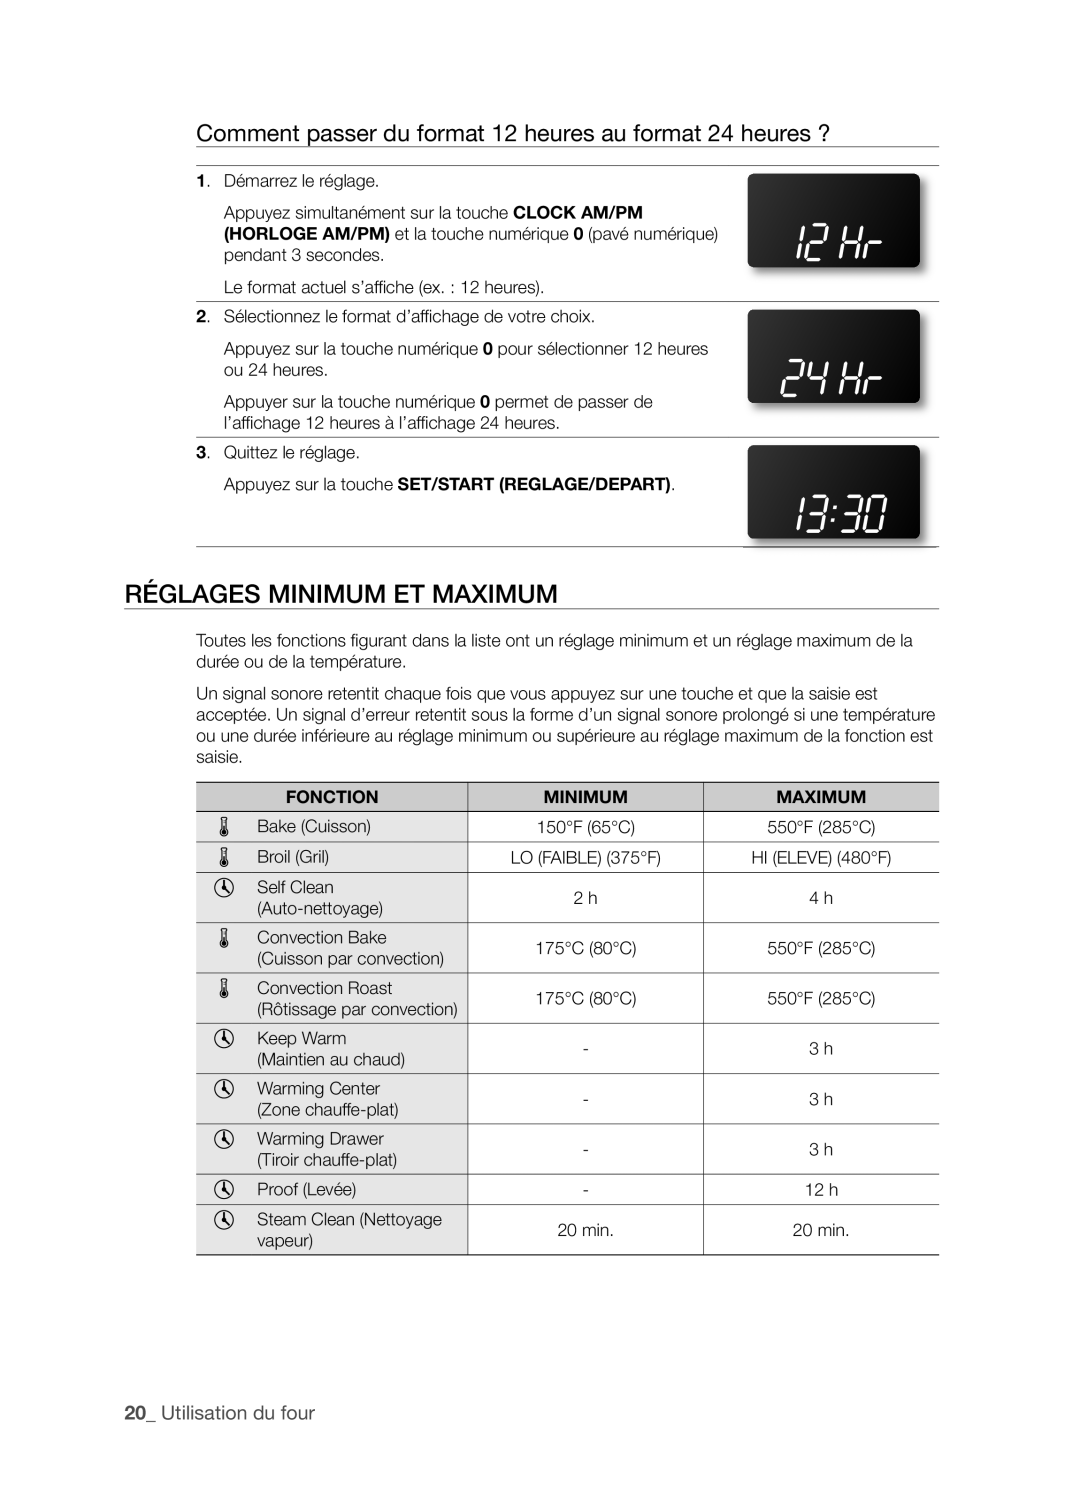 Samsung FTQ352IWX user manual RéGLAGES MINIMUM ET MAXIMUM, 20_ Utilisation du four 